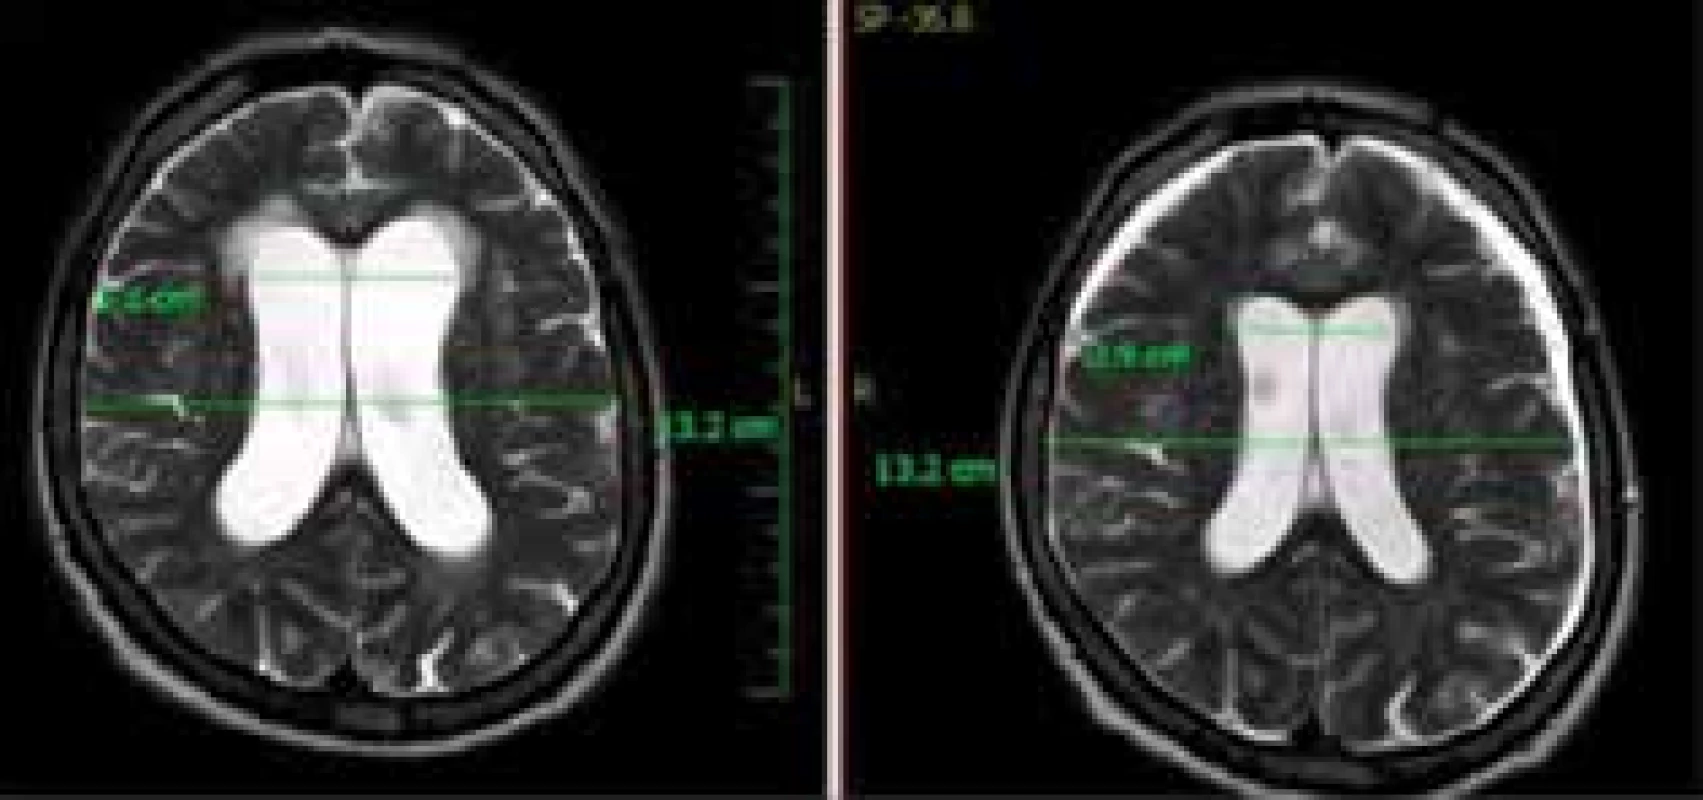 Vpravo MR snímek pacienta po kraniotraumatu
s oboustranným akutním subdurálním hematomem
frontálně oboustranně, vlevo MR snímek u téhož
pacienta s měsíčním odstupem, kde již vidíme rozšíření
postranních komor s transependymálním prosakem
a počínajícím setřením subarachnoideálních prostor<br>
Fig. 5: MR picture on the right showing a patient after
craniotrauma, bilateral acute subdural hematoma can
be seen. The picture on the left shows the same patient
one month later. Enlargement of the lateral ventricles
with transependymal edema and incipient subarachnoid
space effacement can be seen.